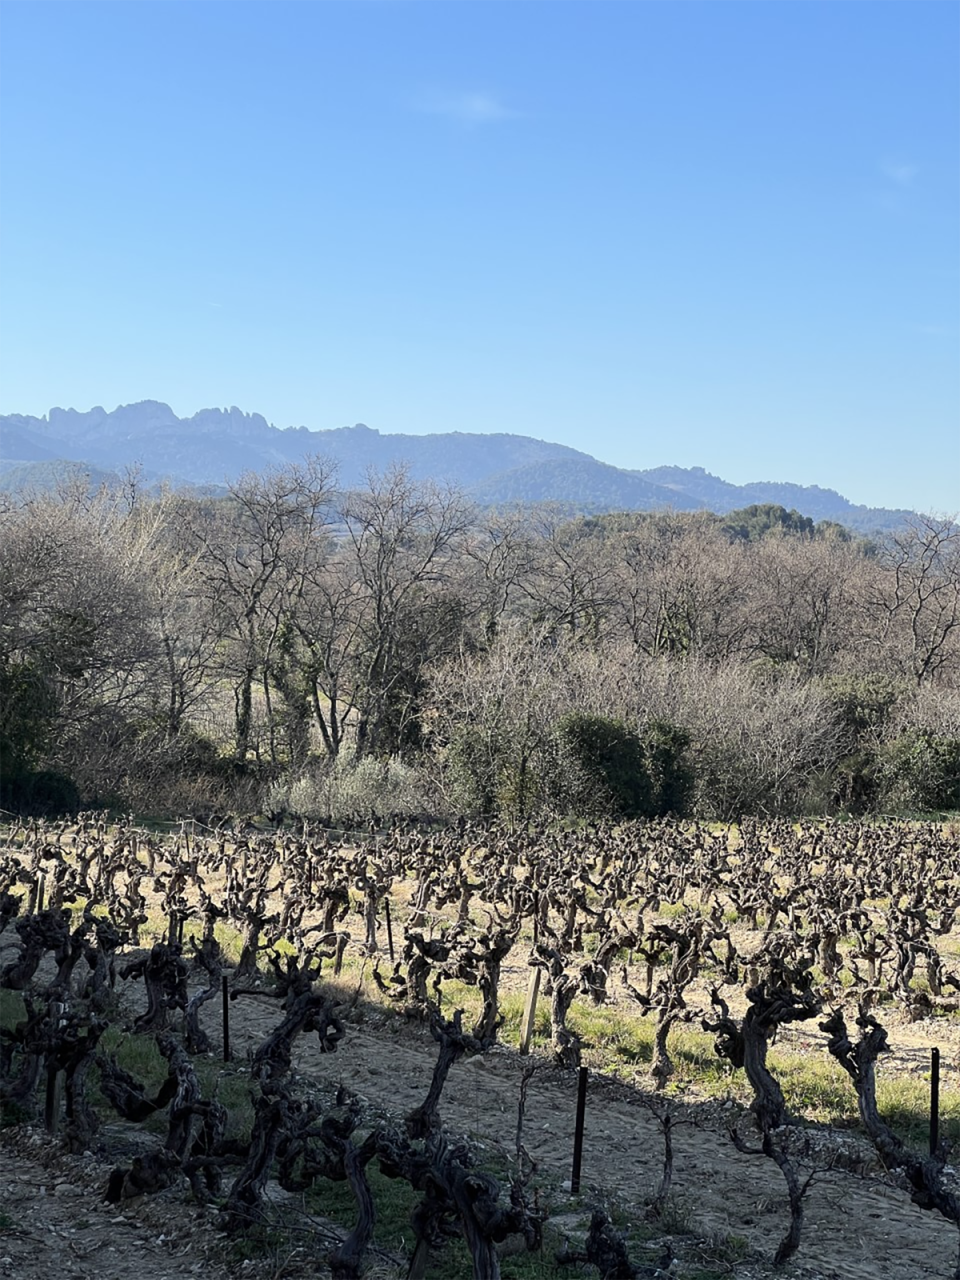 The vines at Domaine de l’Amandine (Hannah Crosbie)